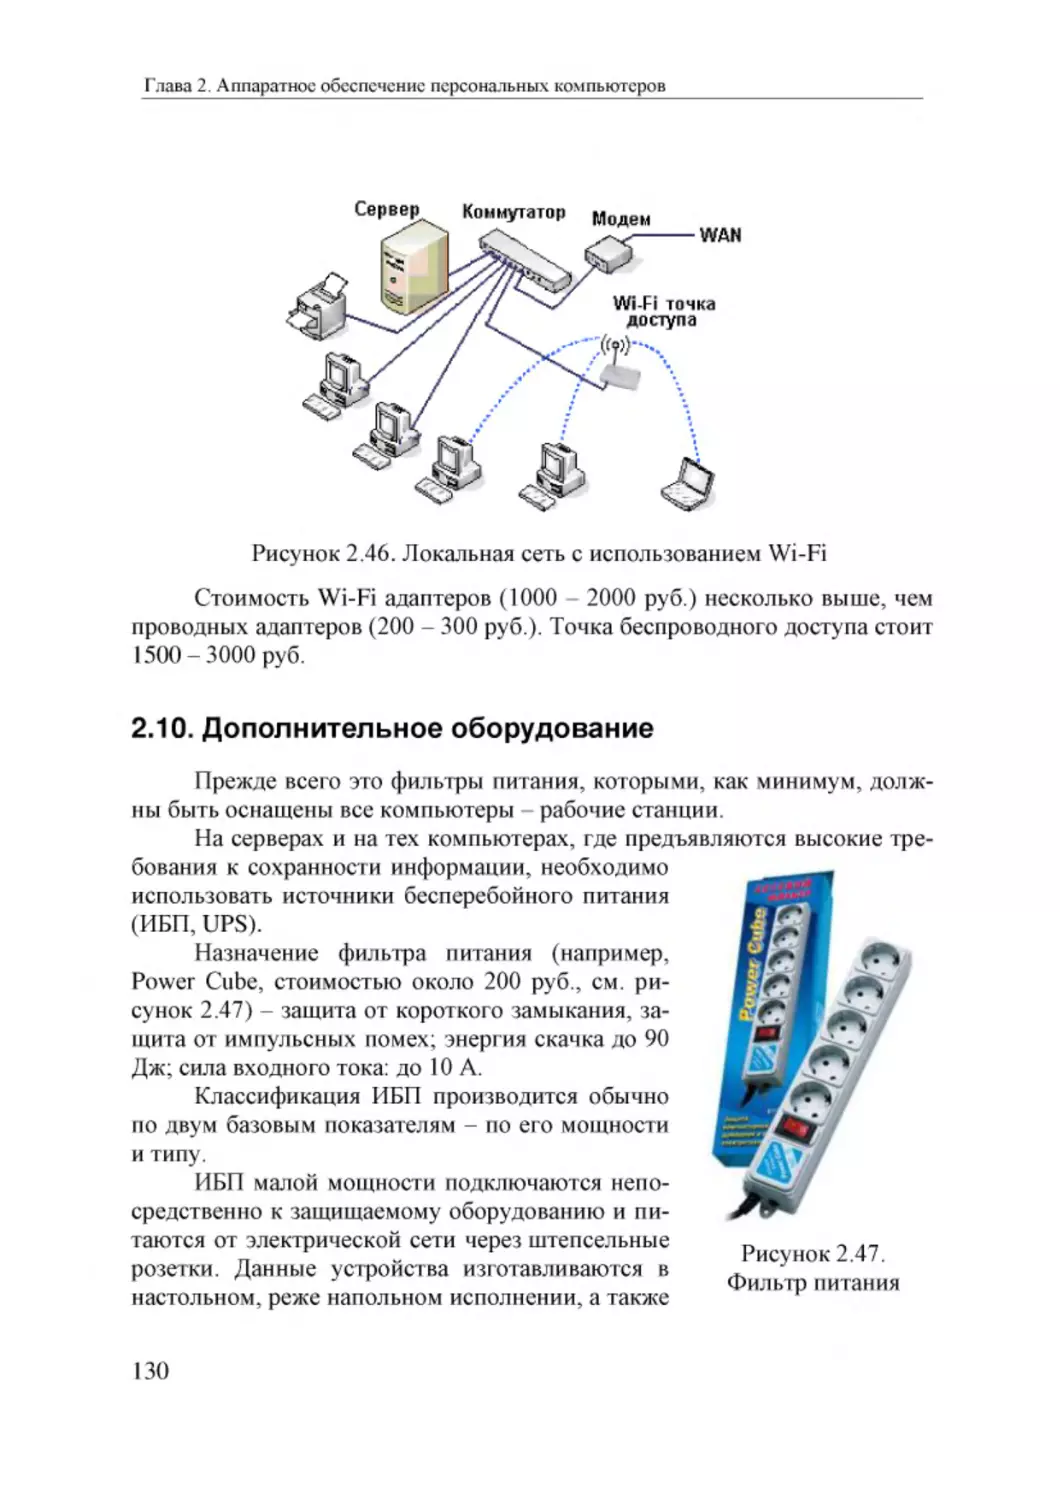 Informatika_Uchebnik_dlya_vuzov_2010 130